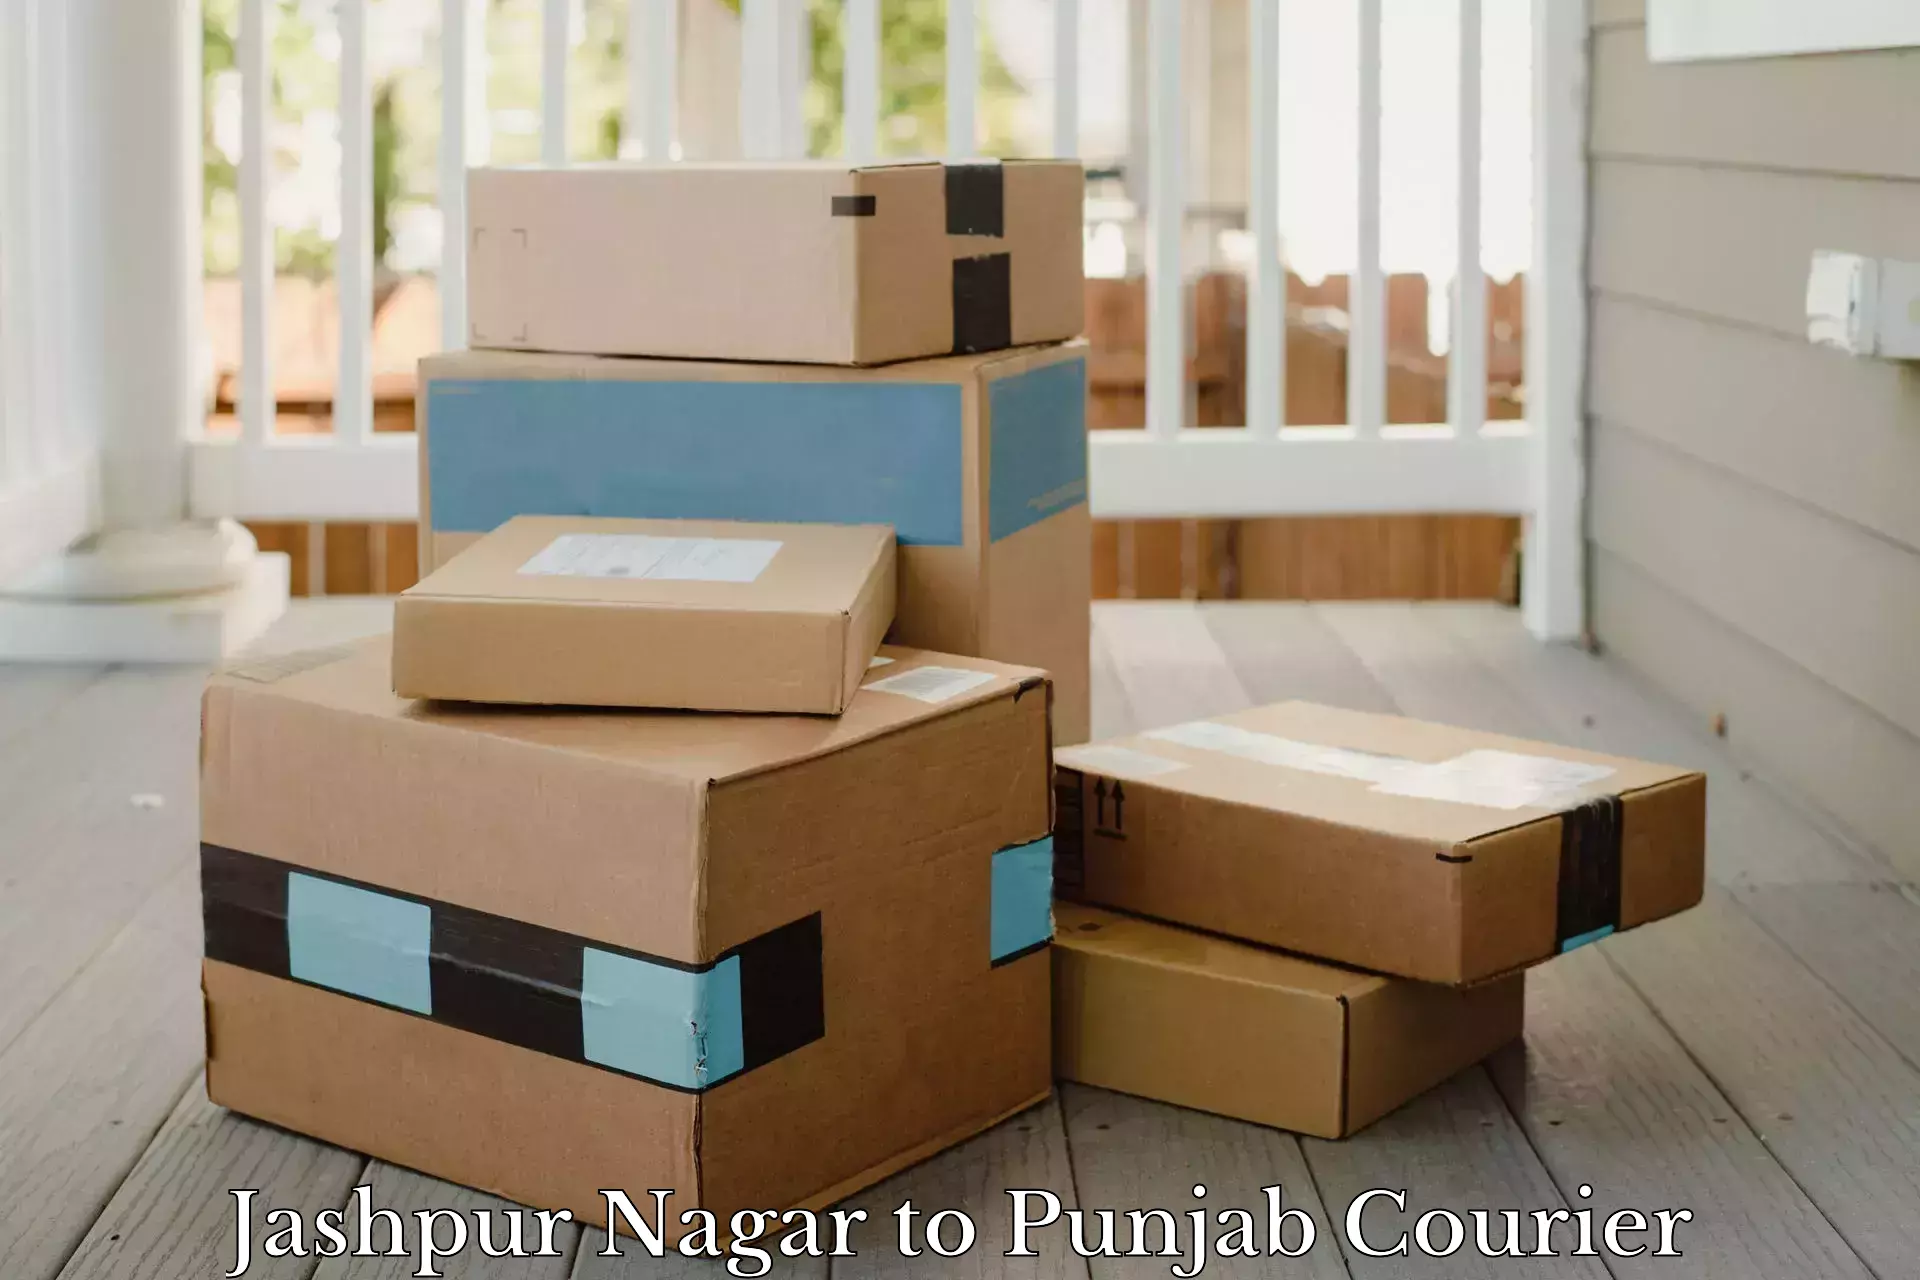 Efficient parcel delivery Jashpur Nagar to Patiala